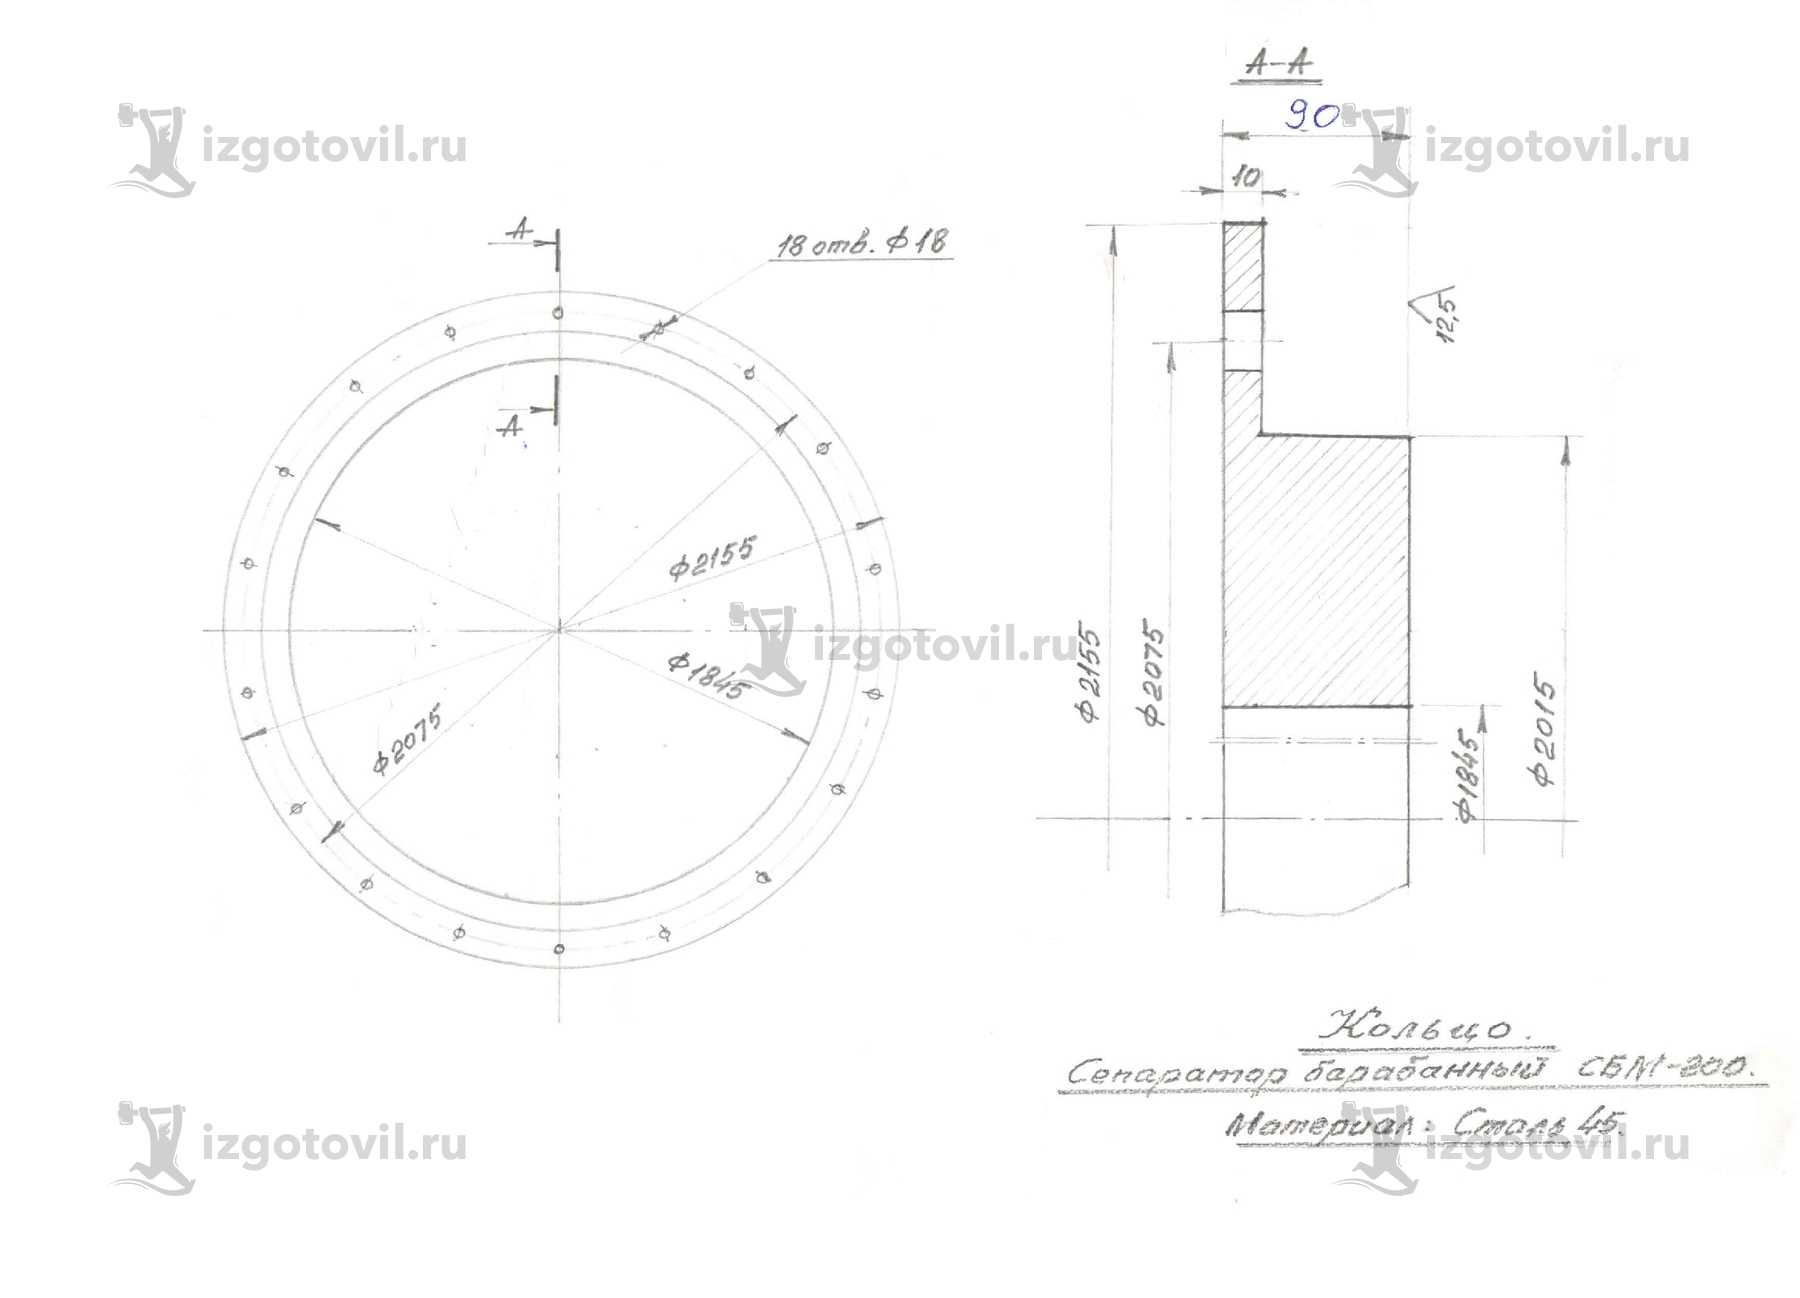 Токарно-фрезерная обработка: изготовление корпусов и кольца